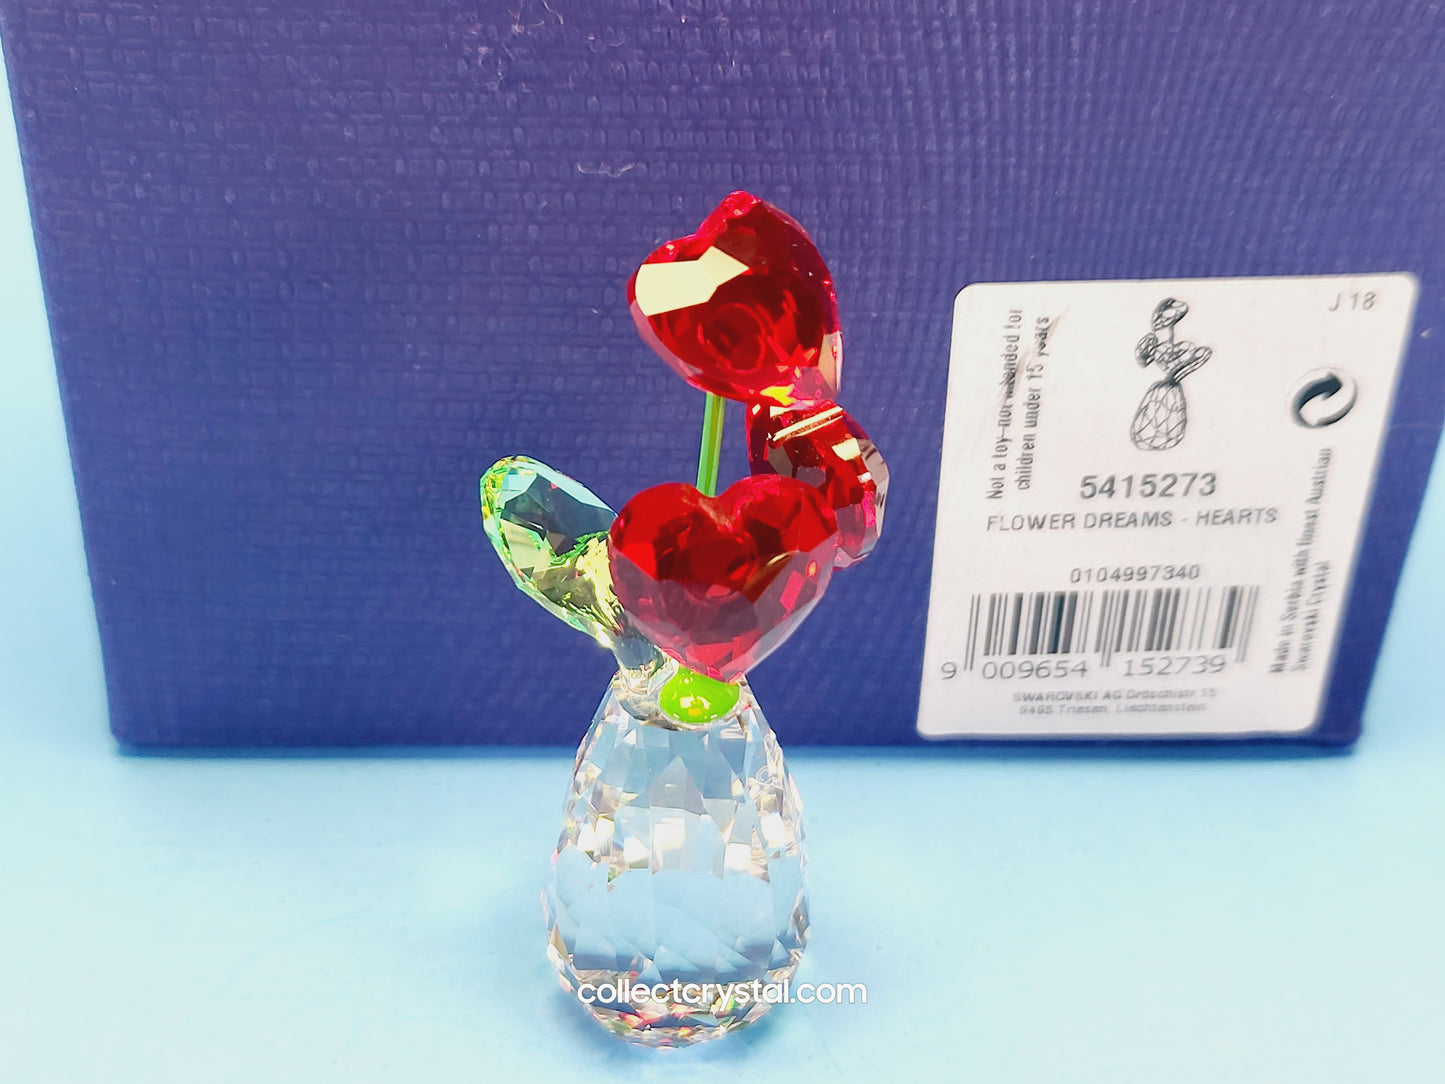 Dreams Heart Flower Figurine5415273